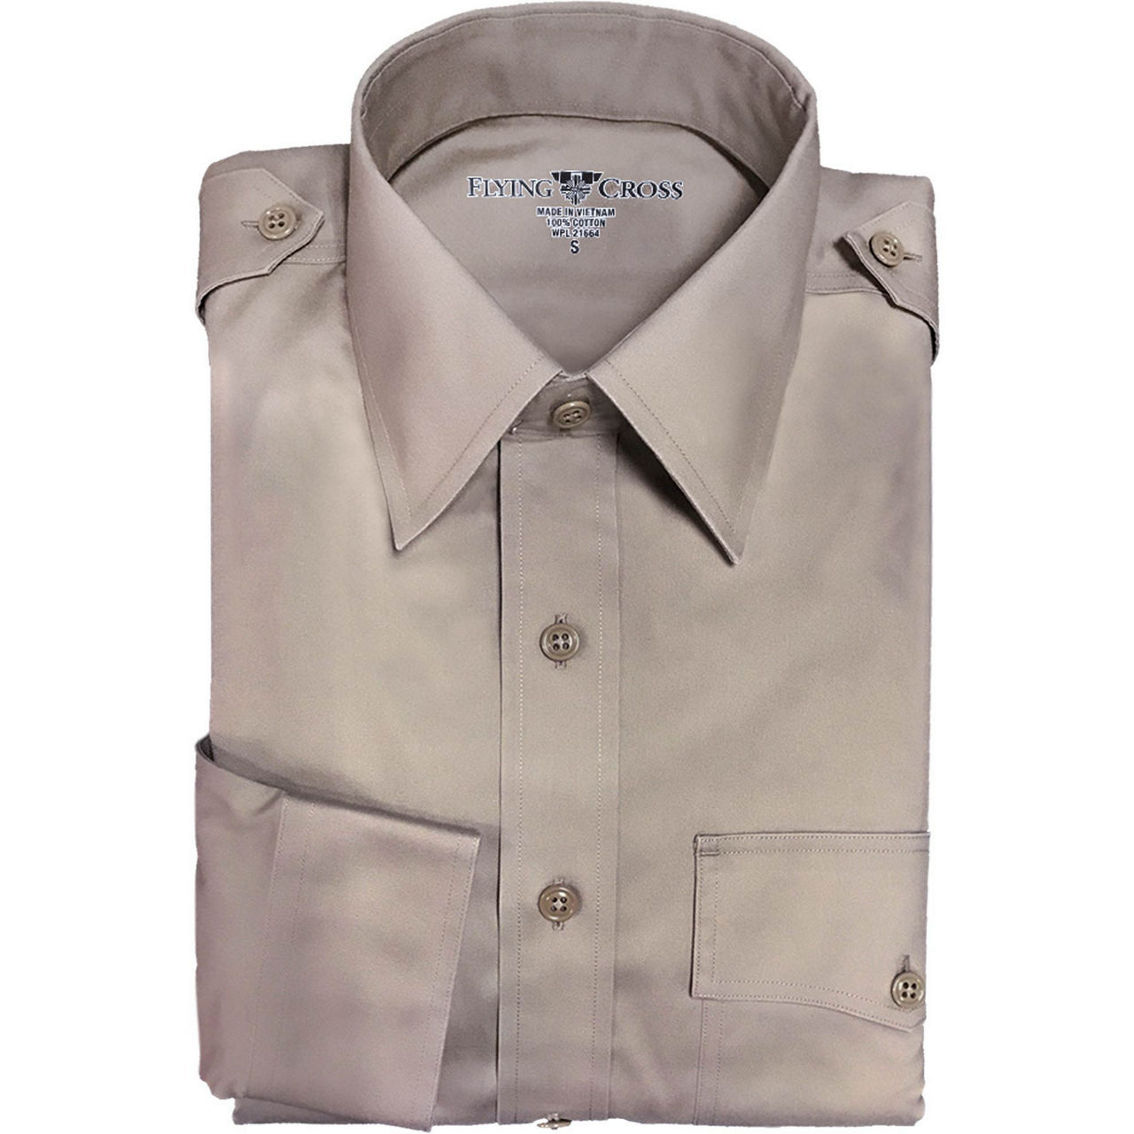 Flying Cross Male Officer Short Sleeve Dress Shirt (agsu) | Uniforms ...